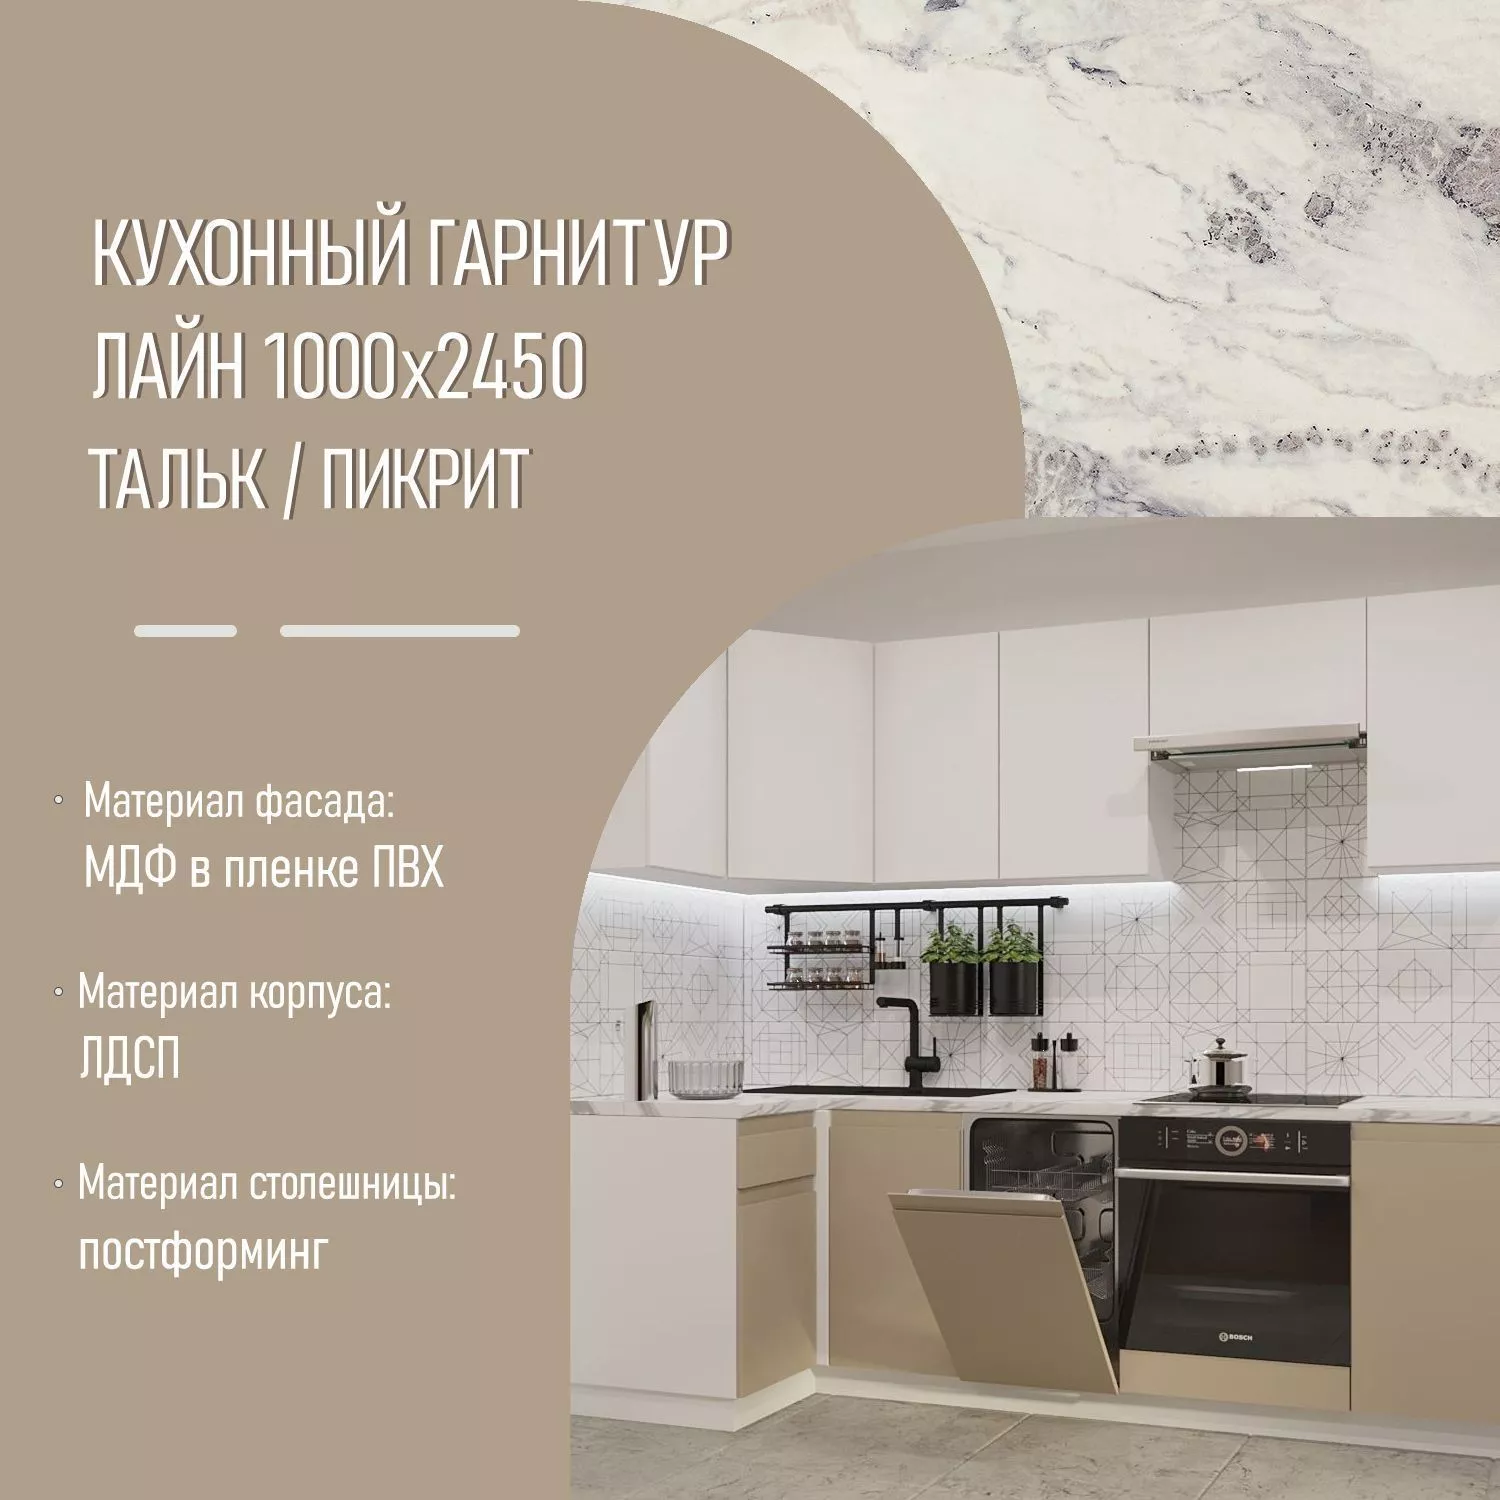 Кухонный гарнитур без ручек Тальк / Пикрит Лайн 1000х2450 (арт.28)